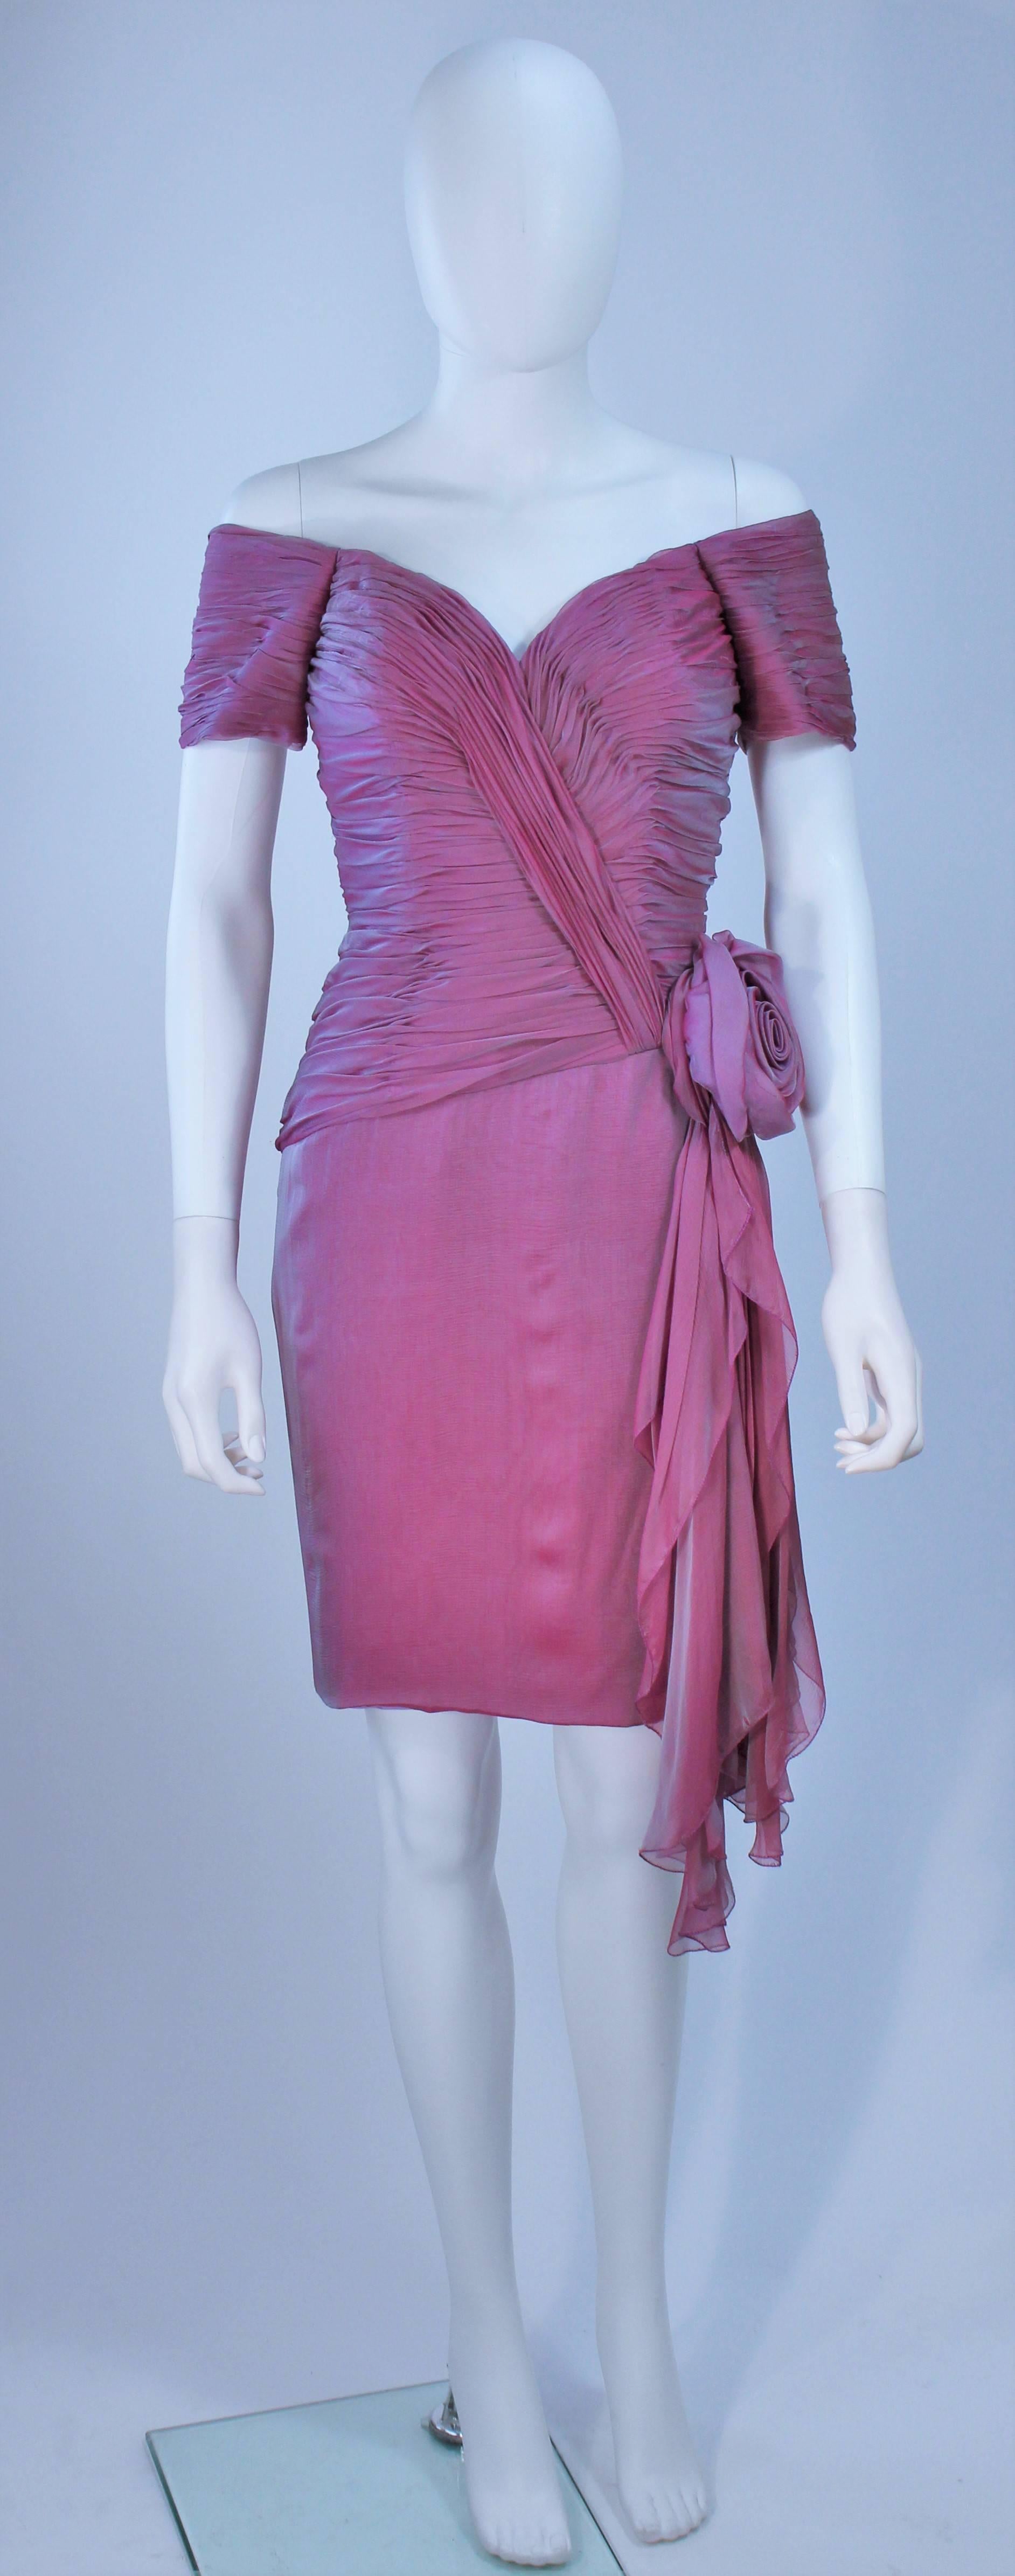  Diese Vicky Tiel  das Kleid besteht aus schillernder lavendelfarbener Seide. Mit einer großen Rose und Drapierungen mit gerafftem Mieder. Es gibt einen Reißverschluss in der Mitte des Rückens. In ausgezeichnetem Vintage-Zustand. 

  **Bitte